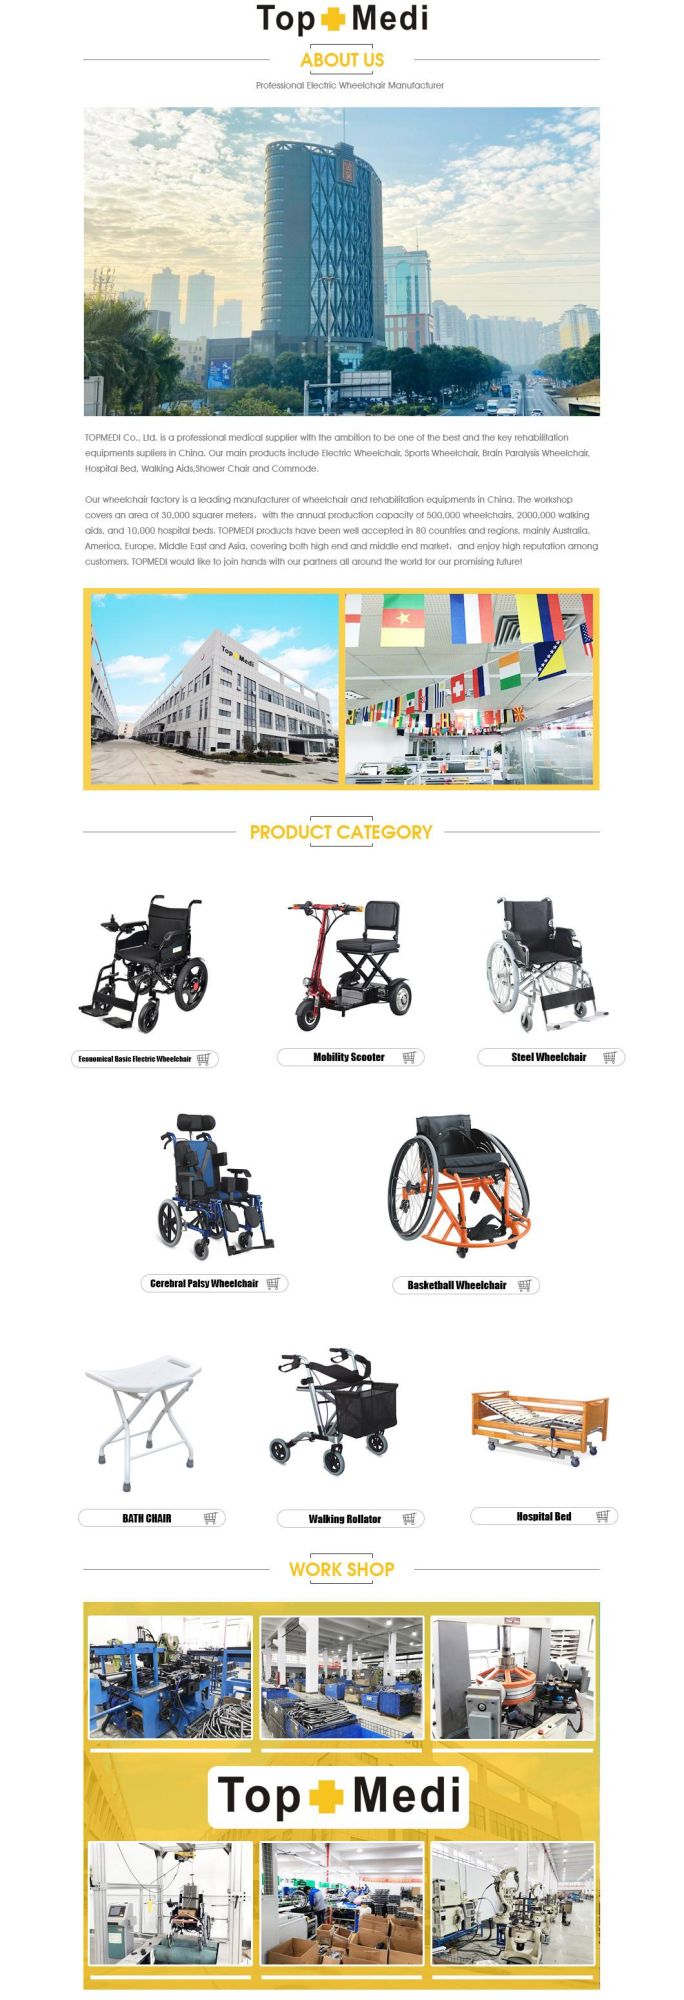 Medical Equipment Pediatric Aluminum Wheelchair for Children